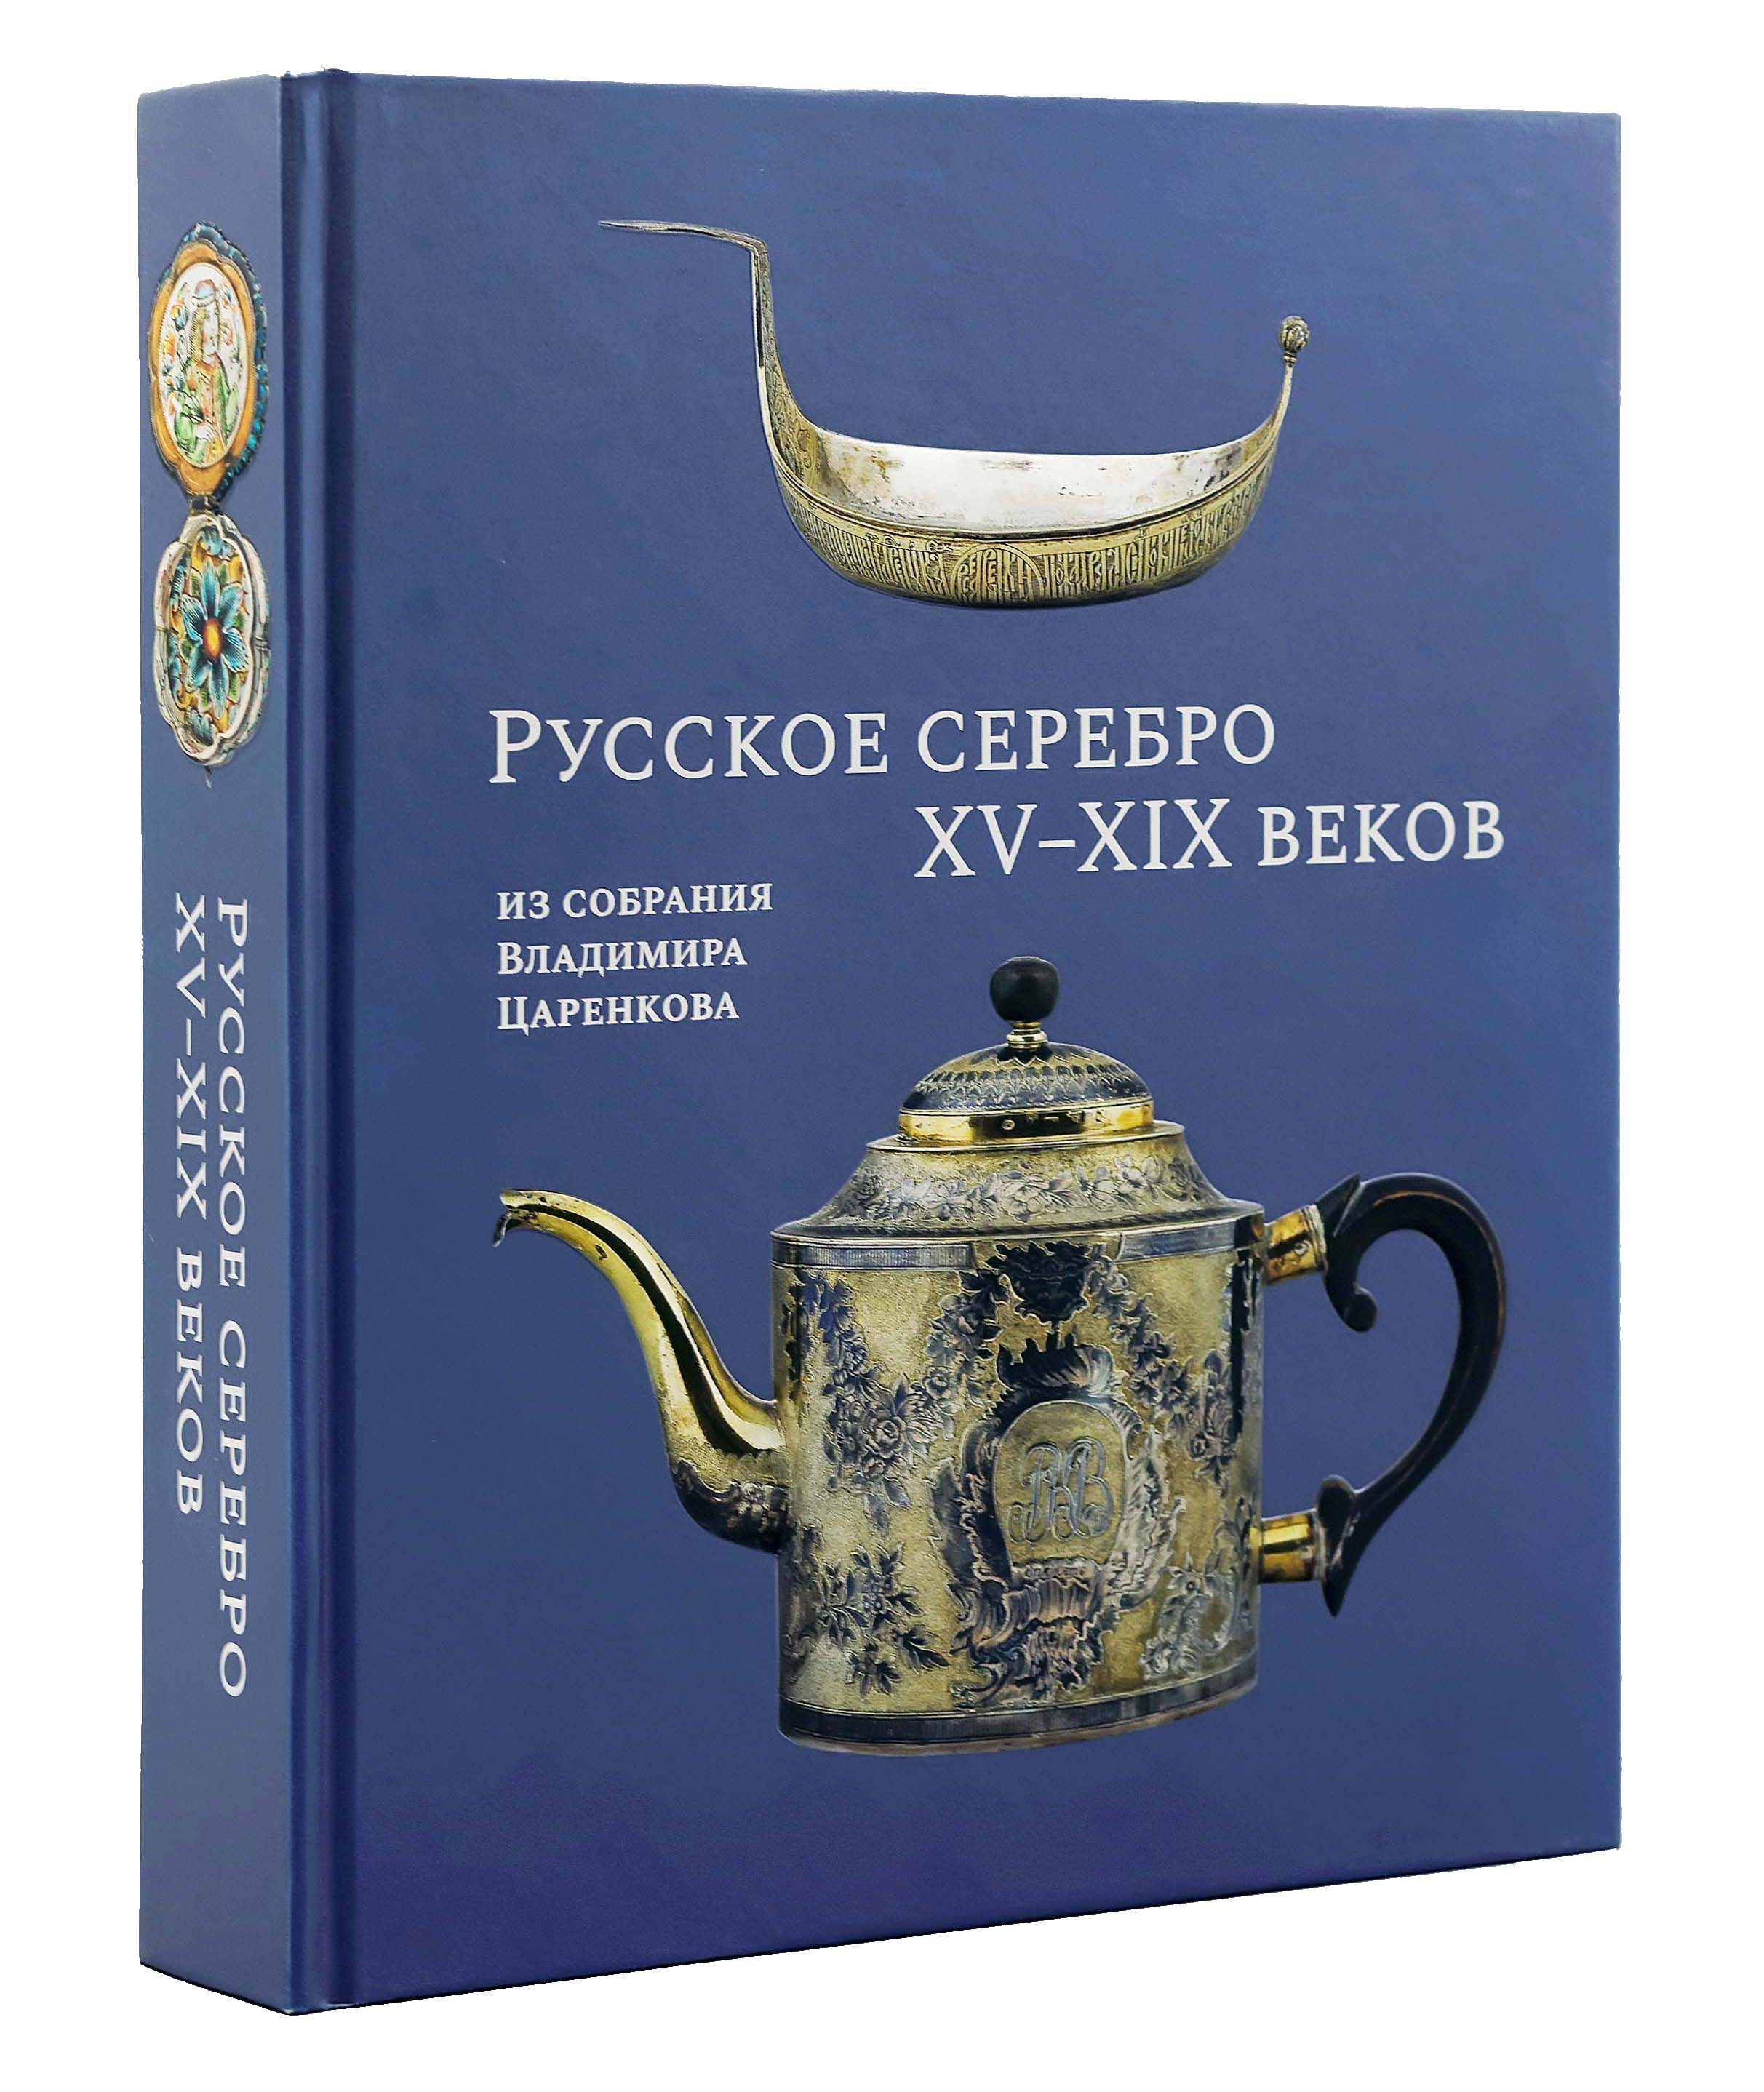 Русское серебро XV–XIX веков из собрания Владимира Царенкова